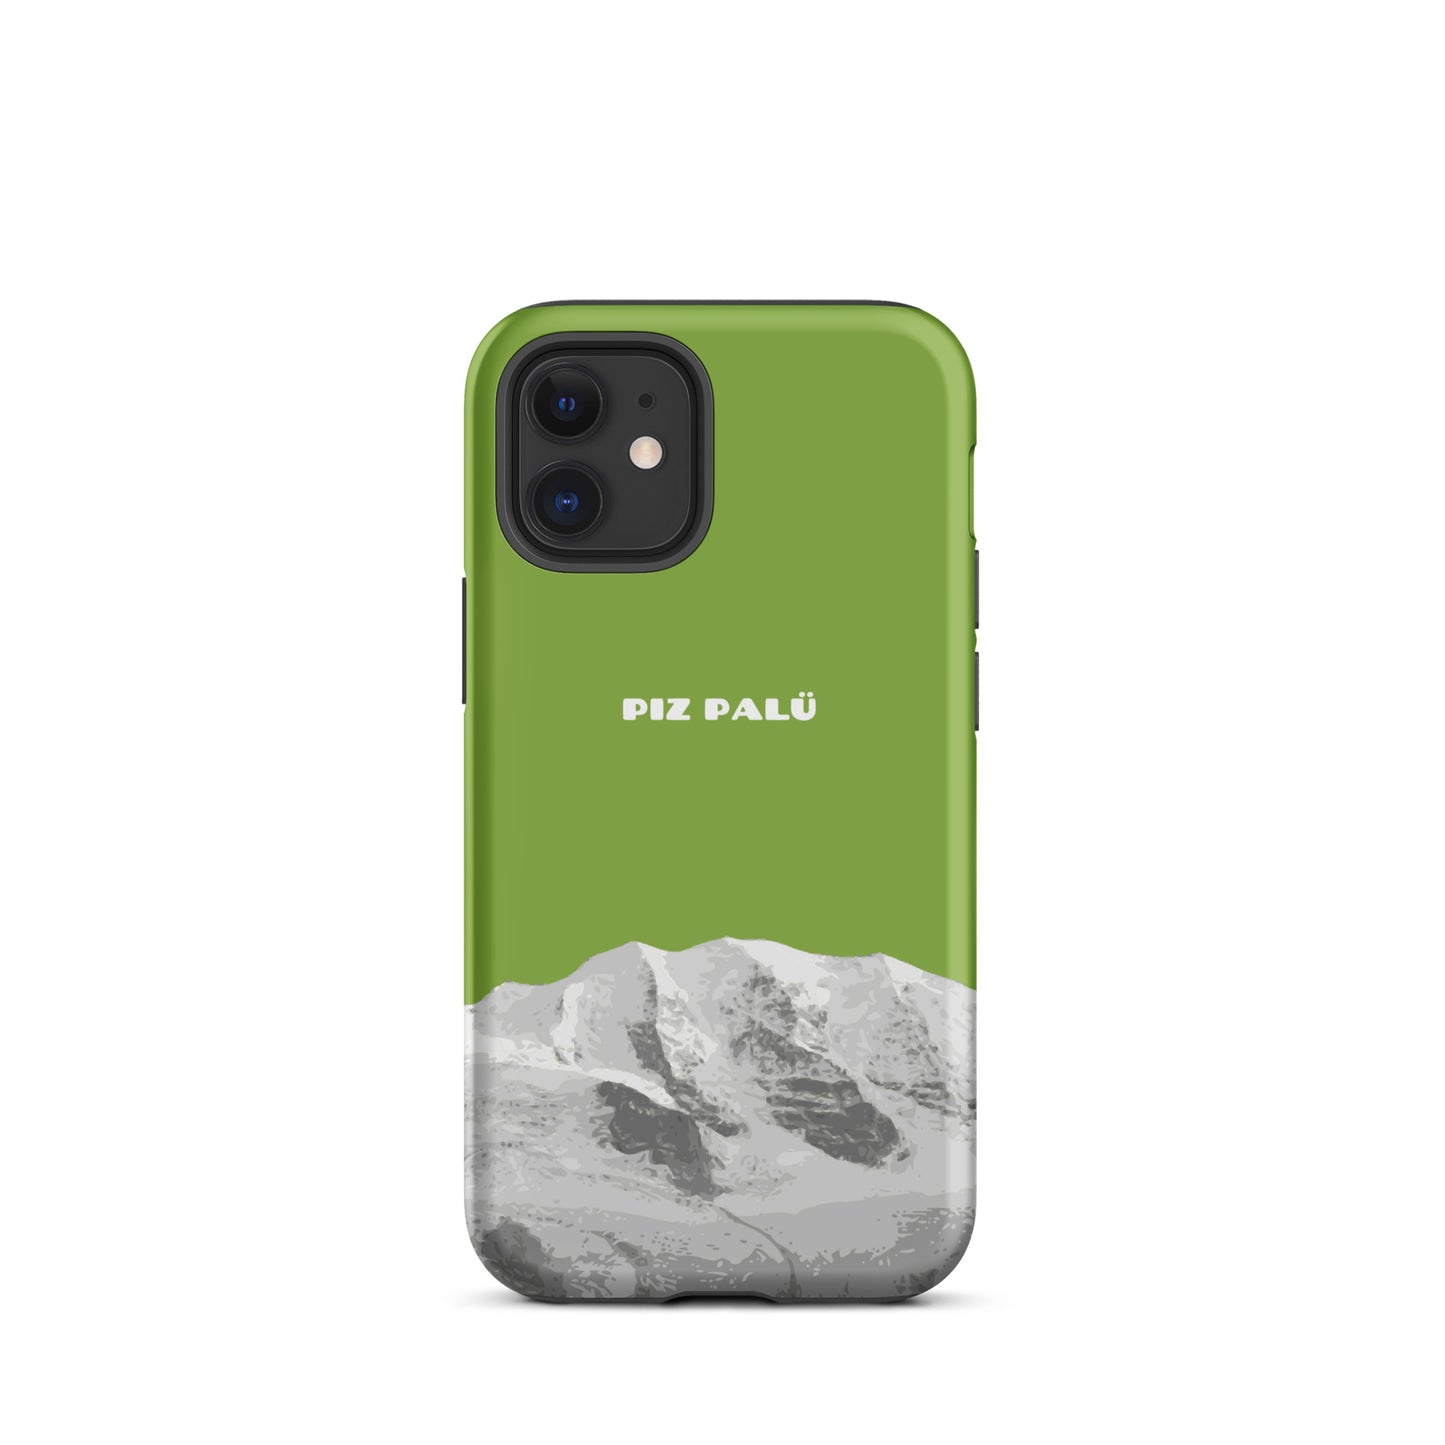 Hülle für das iPhone 12 mini von Apple in der Farbe Gelbgrün, dass den Piz Palü in Graubünden zeigt. 